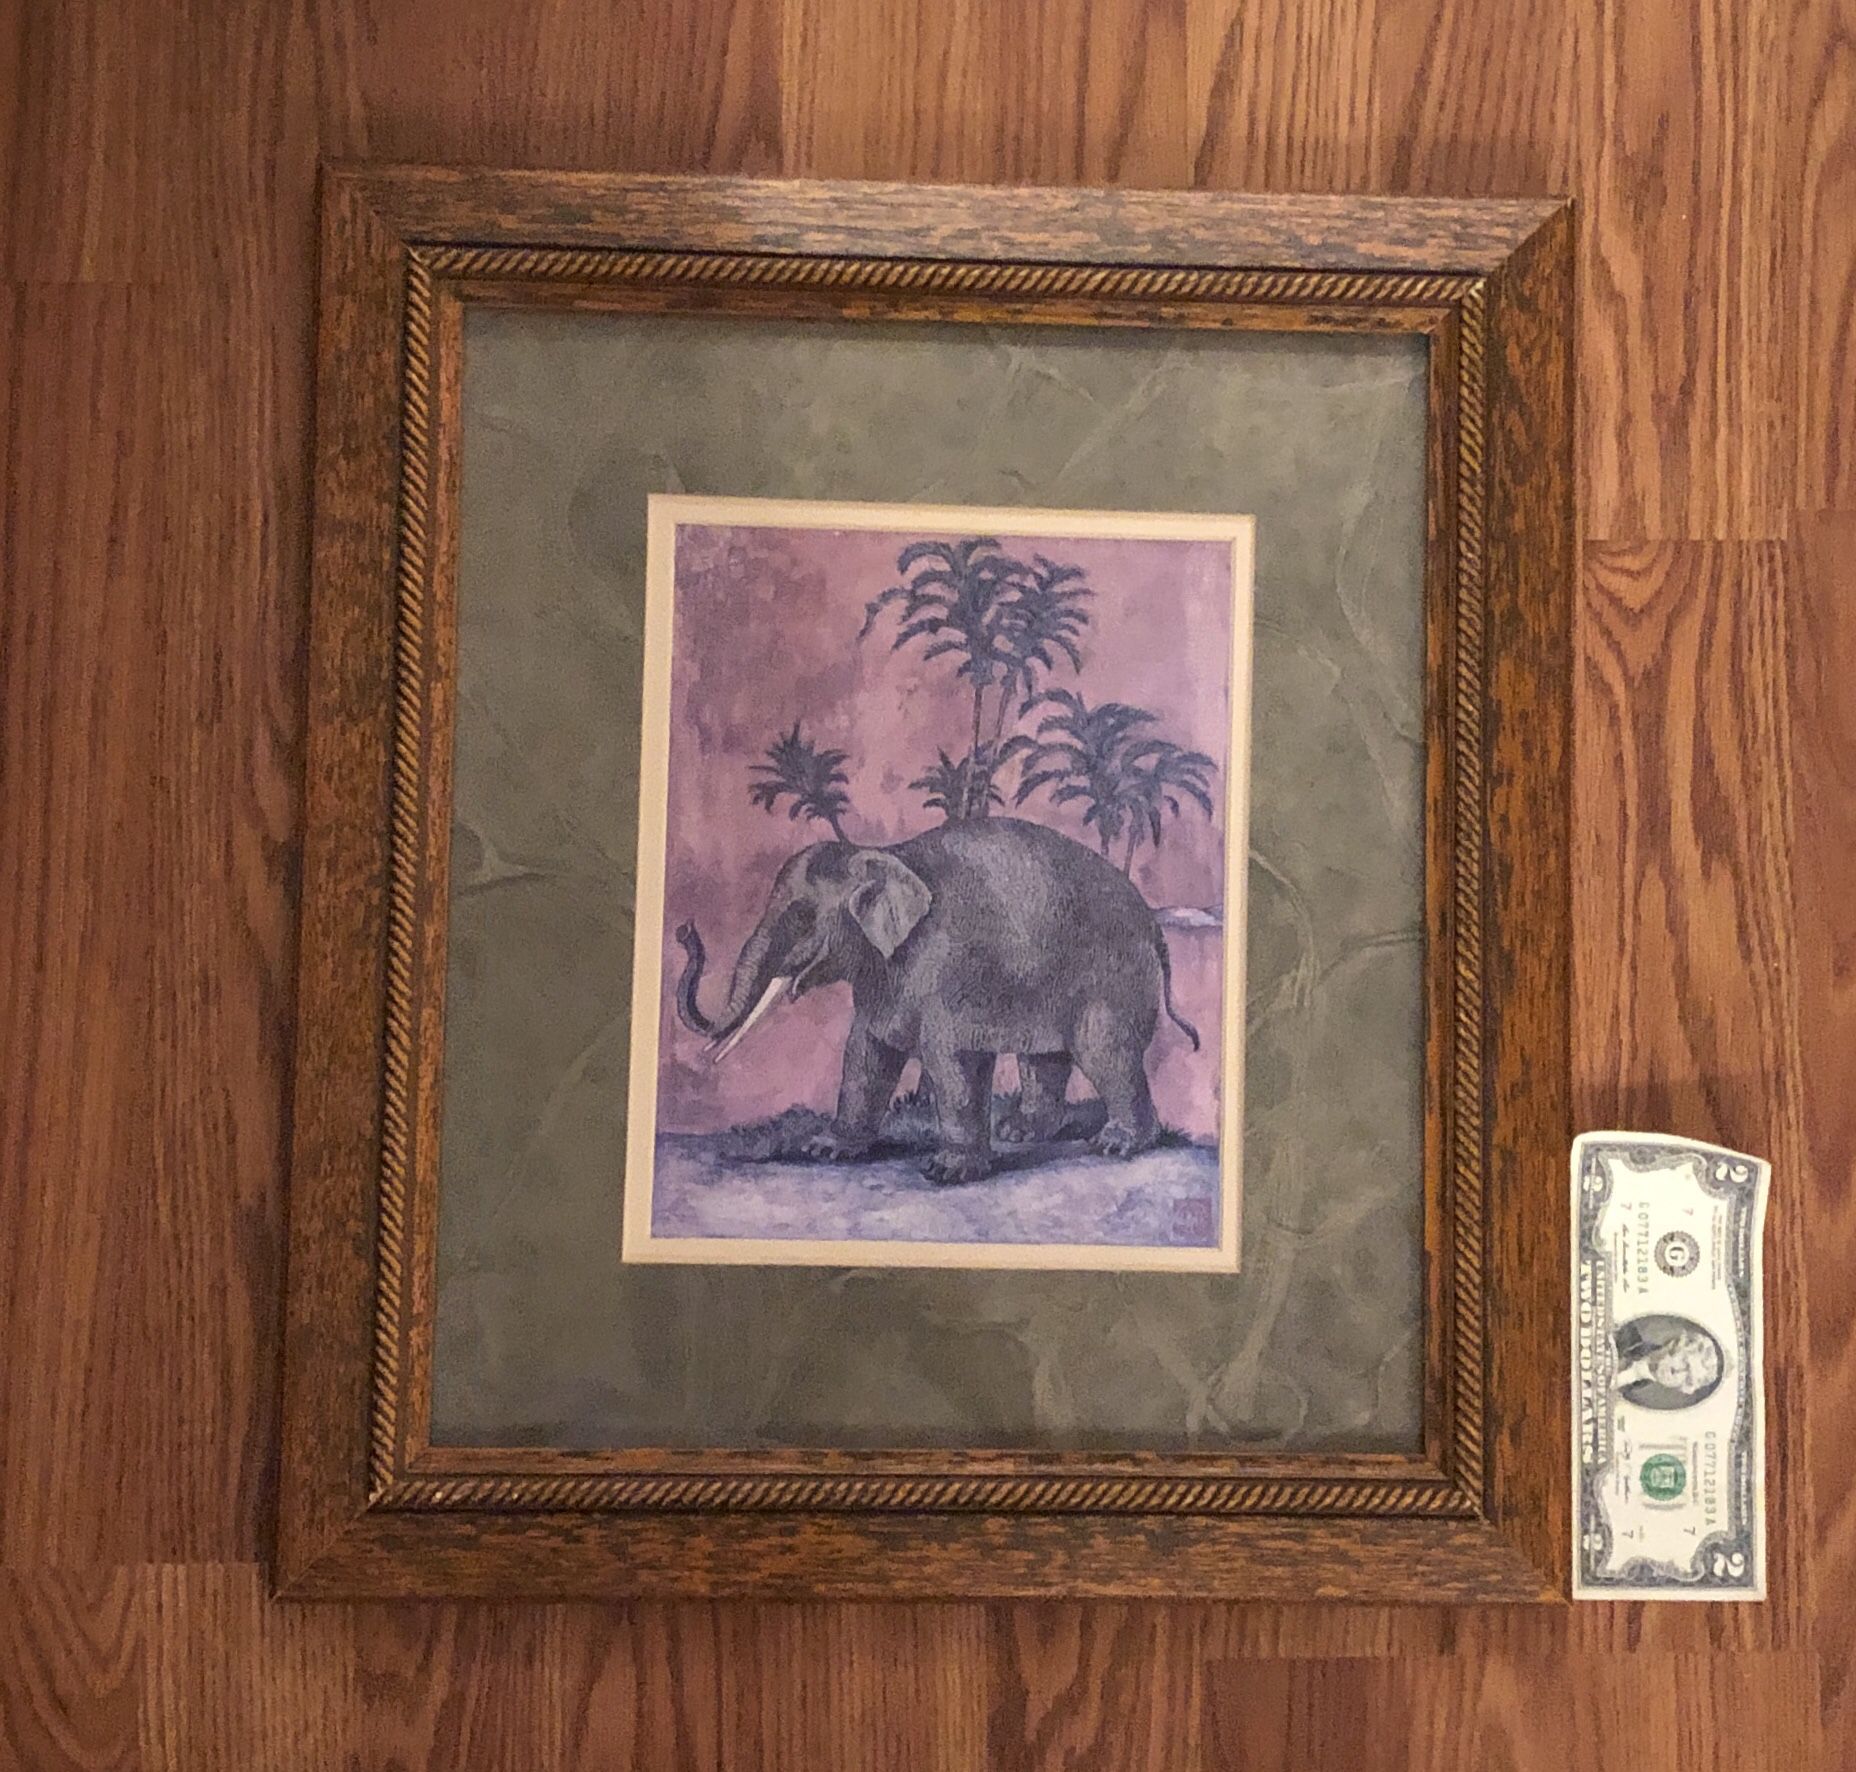 Framed art - elephant